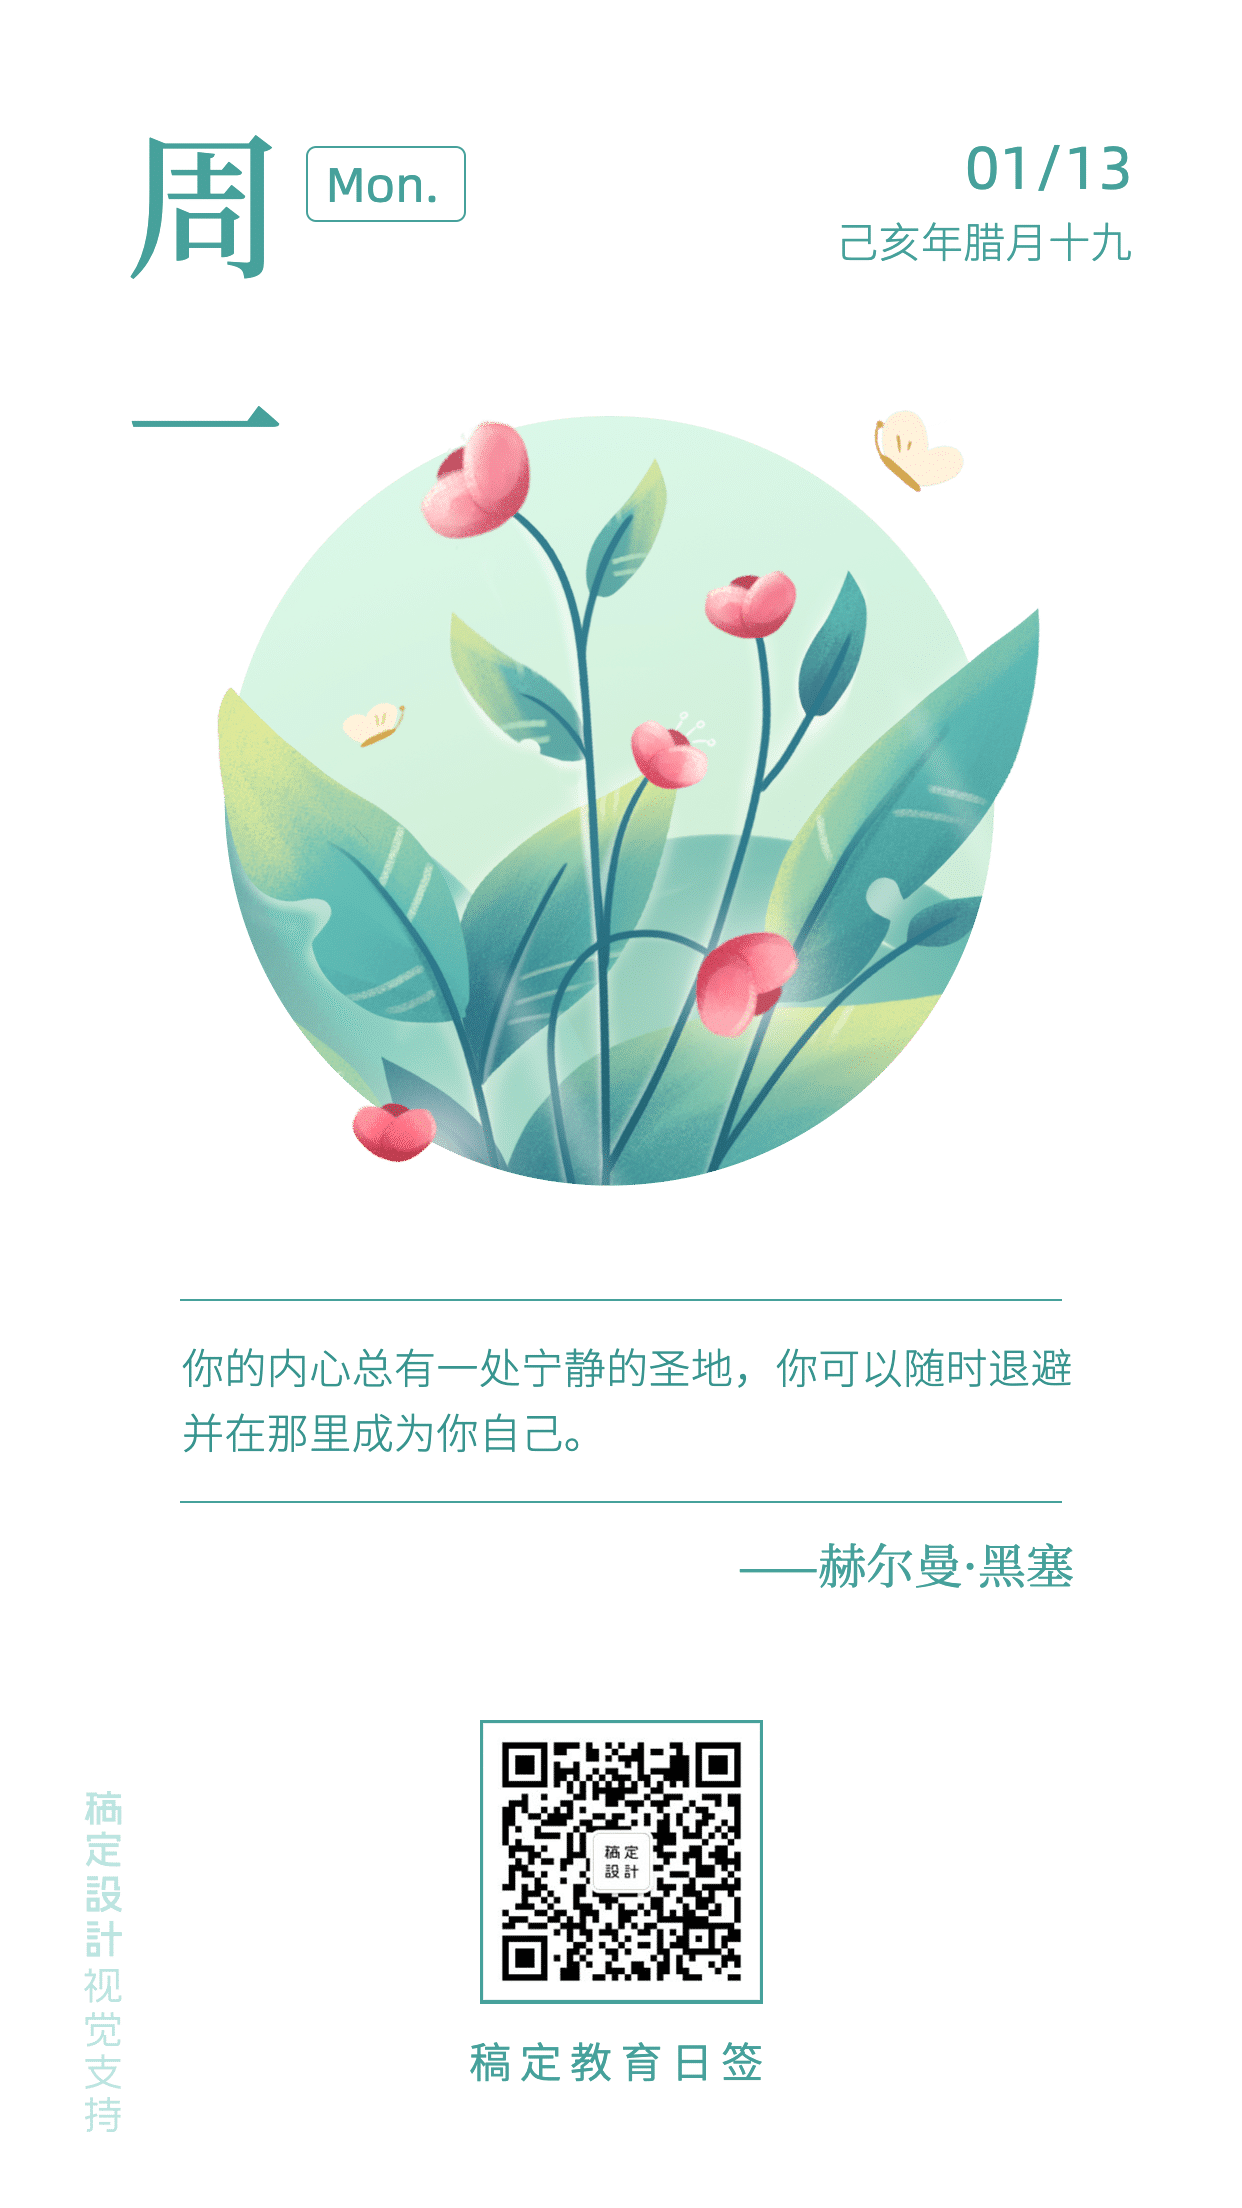 幸福/简约文艺清晰/日签海报